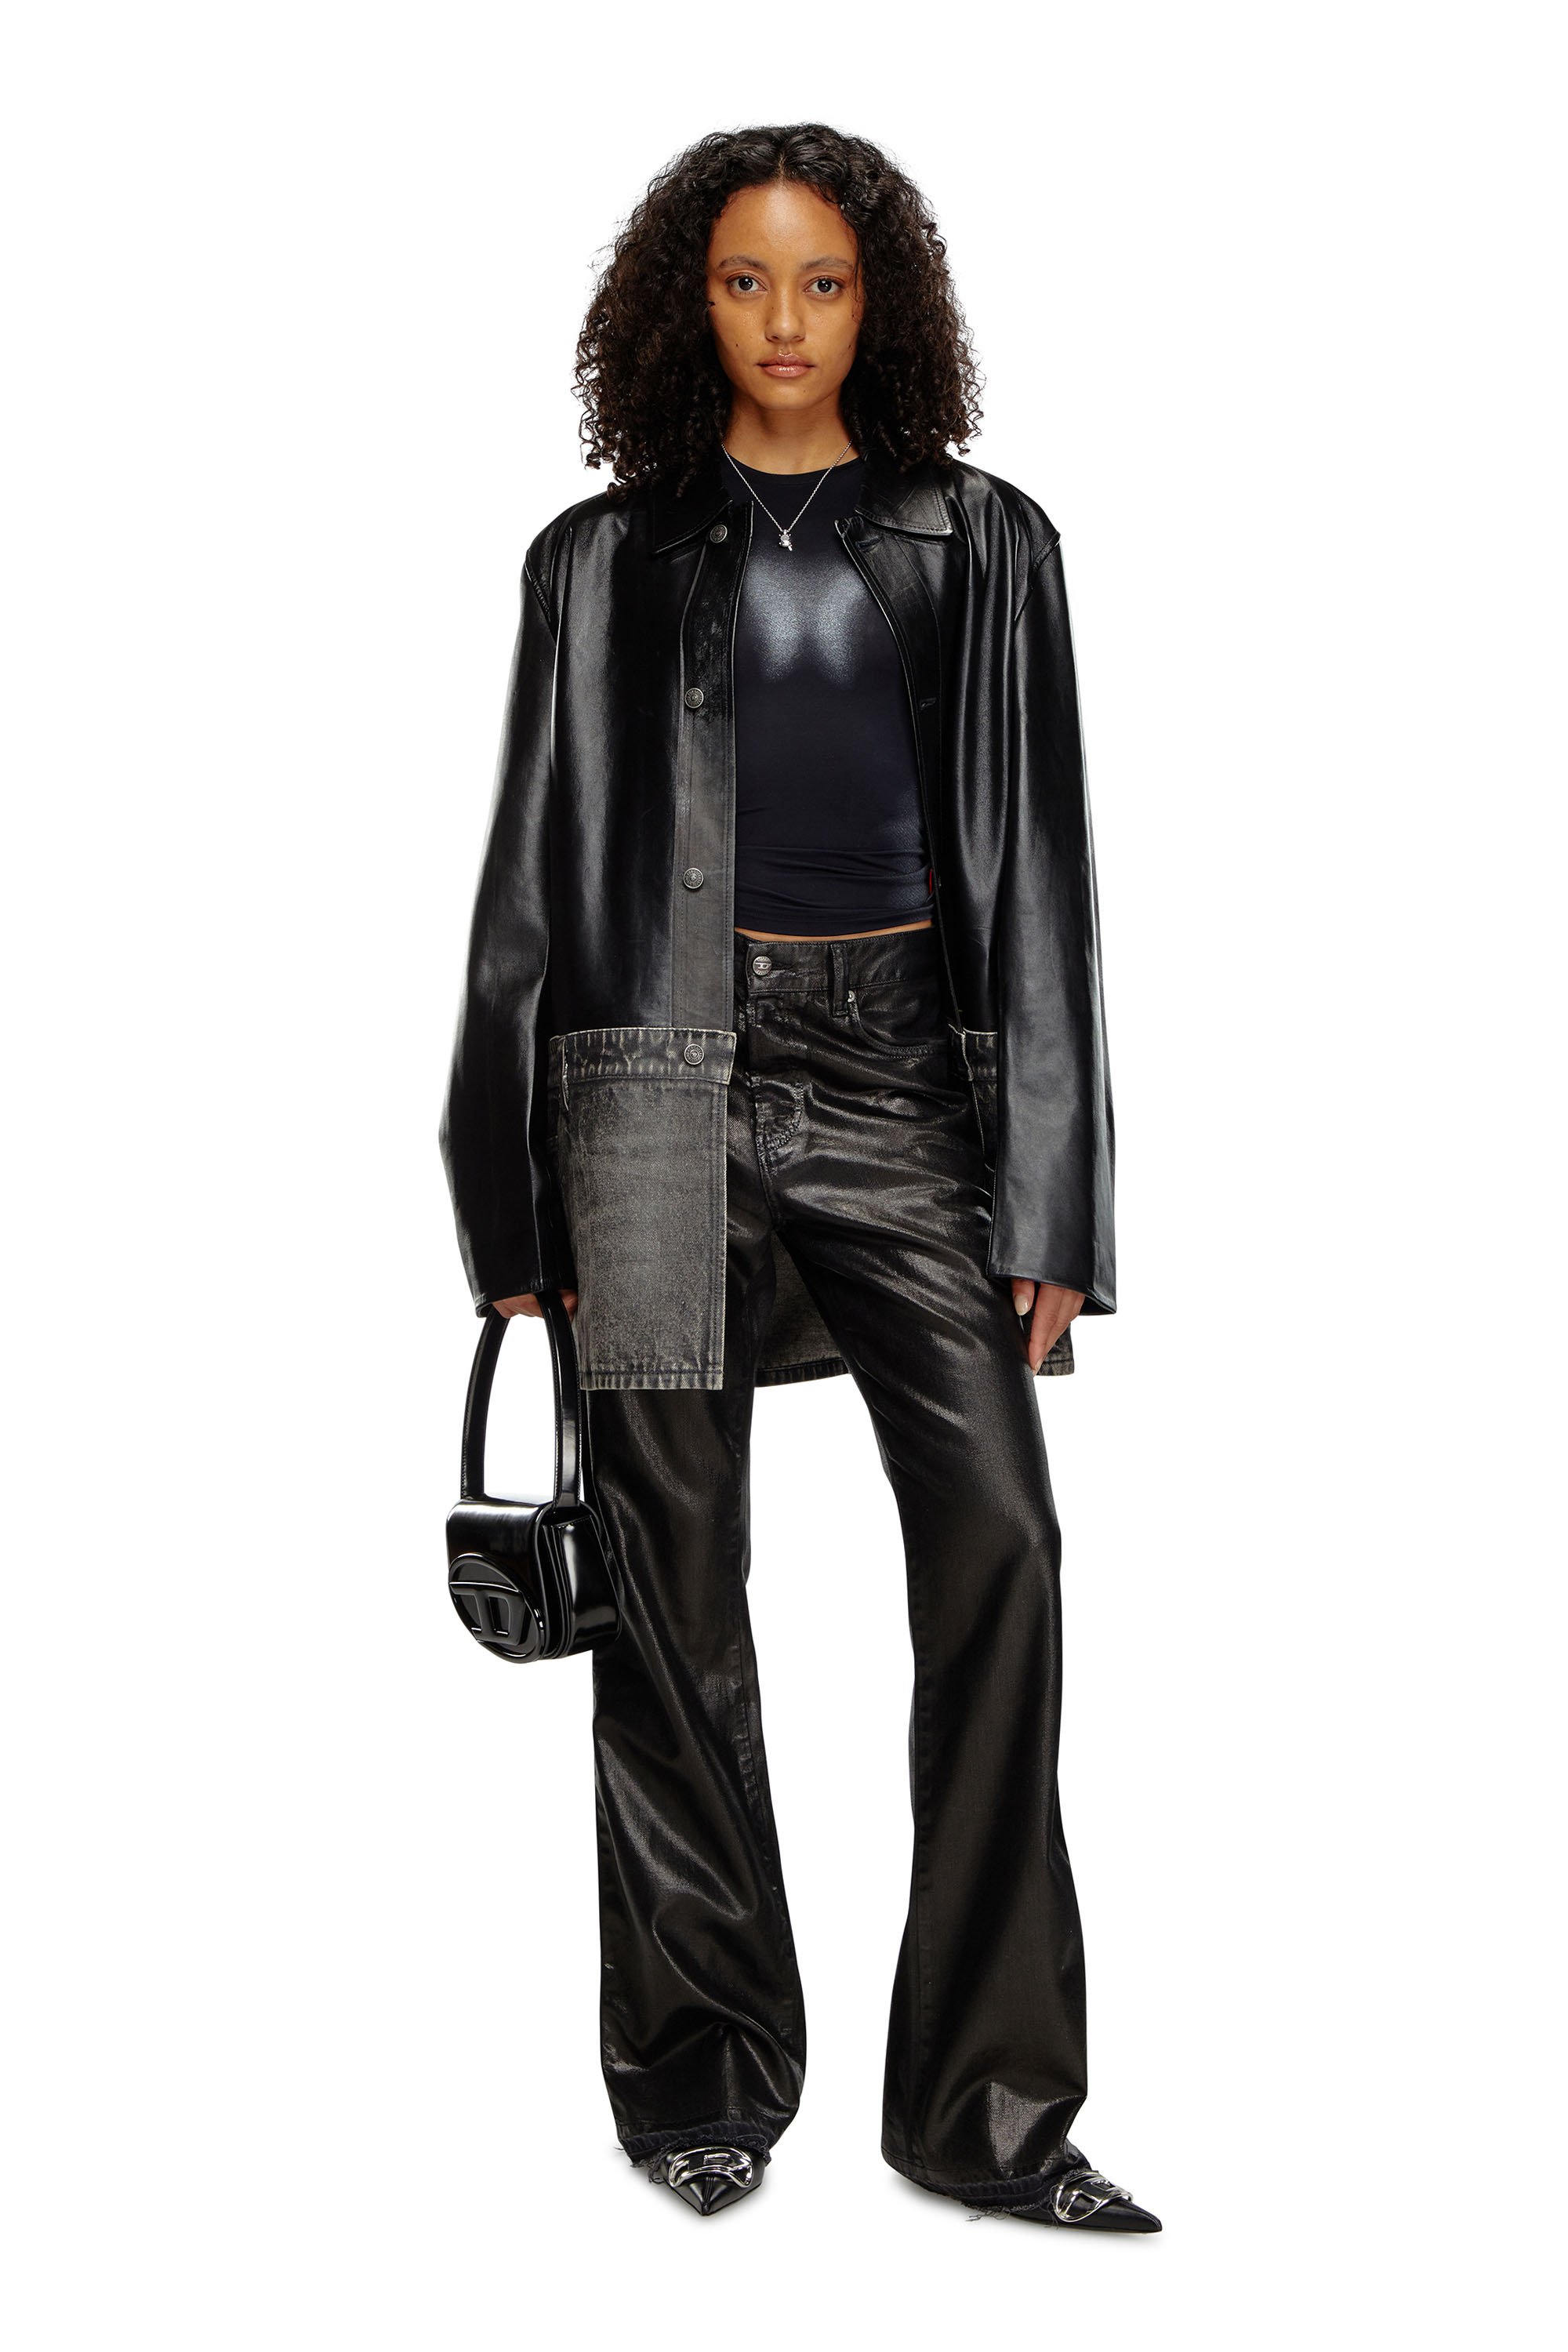 Diesel - T-ILON, Femme T-shirt à manches longues avec effets métallisés in Noir - Image 2